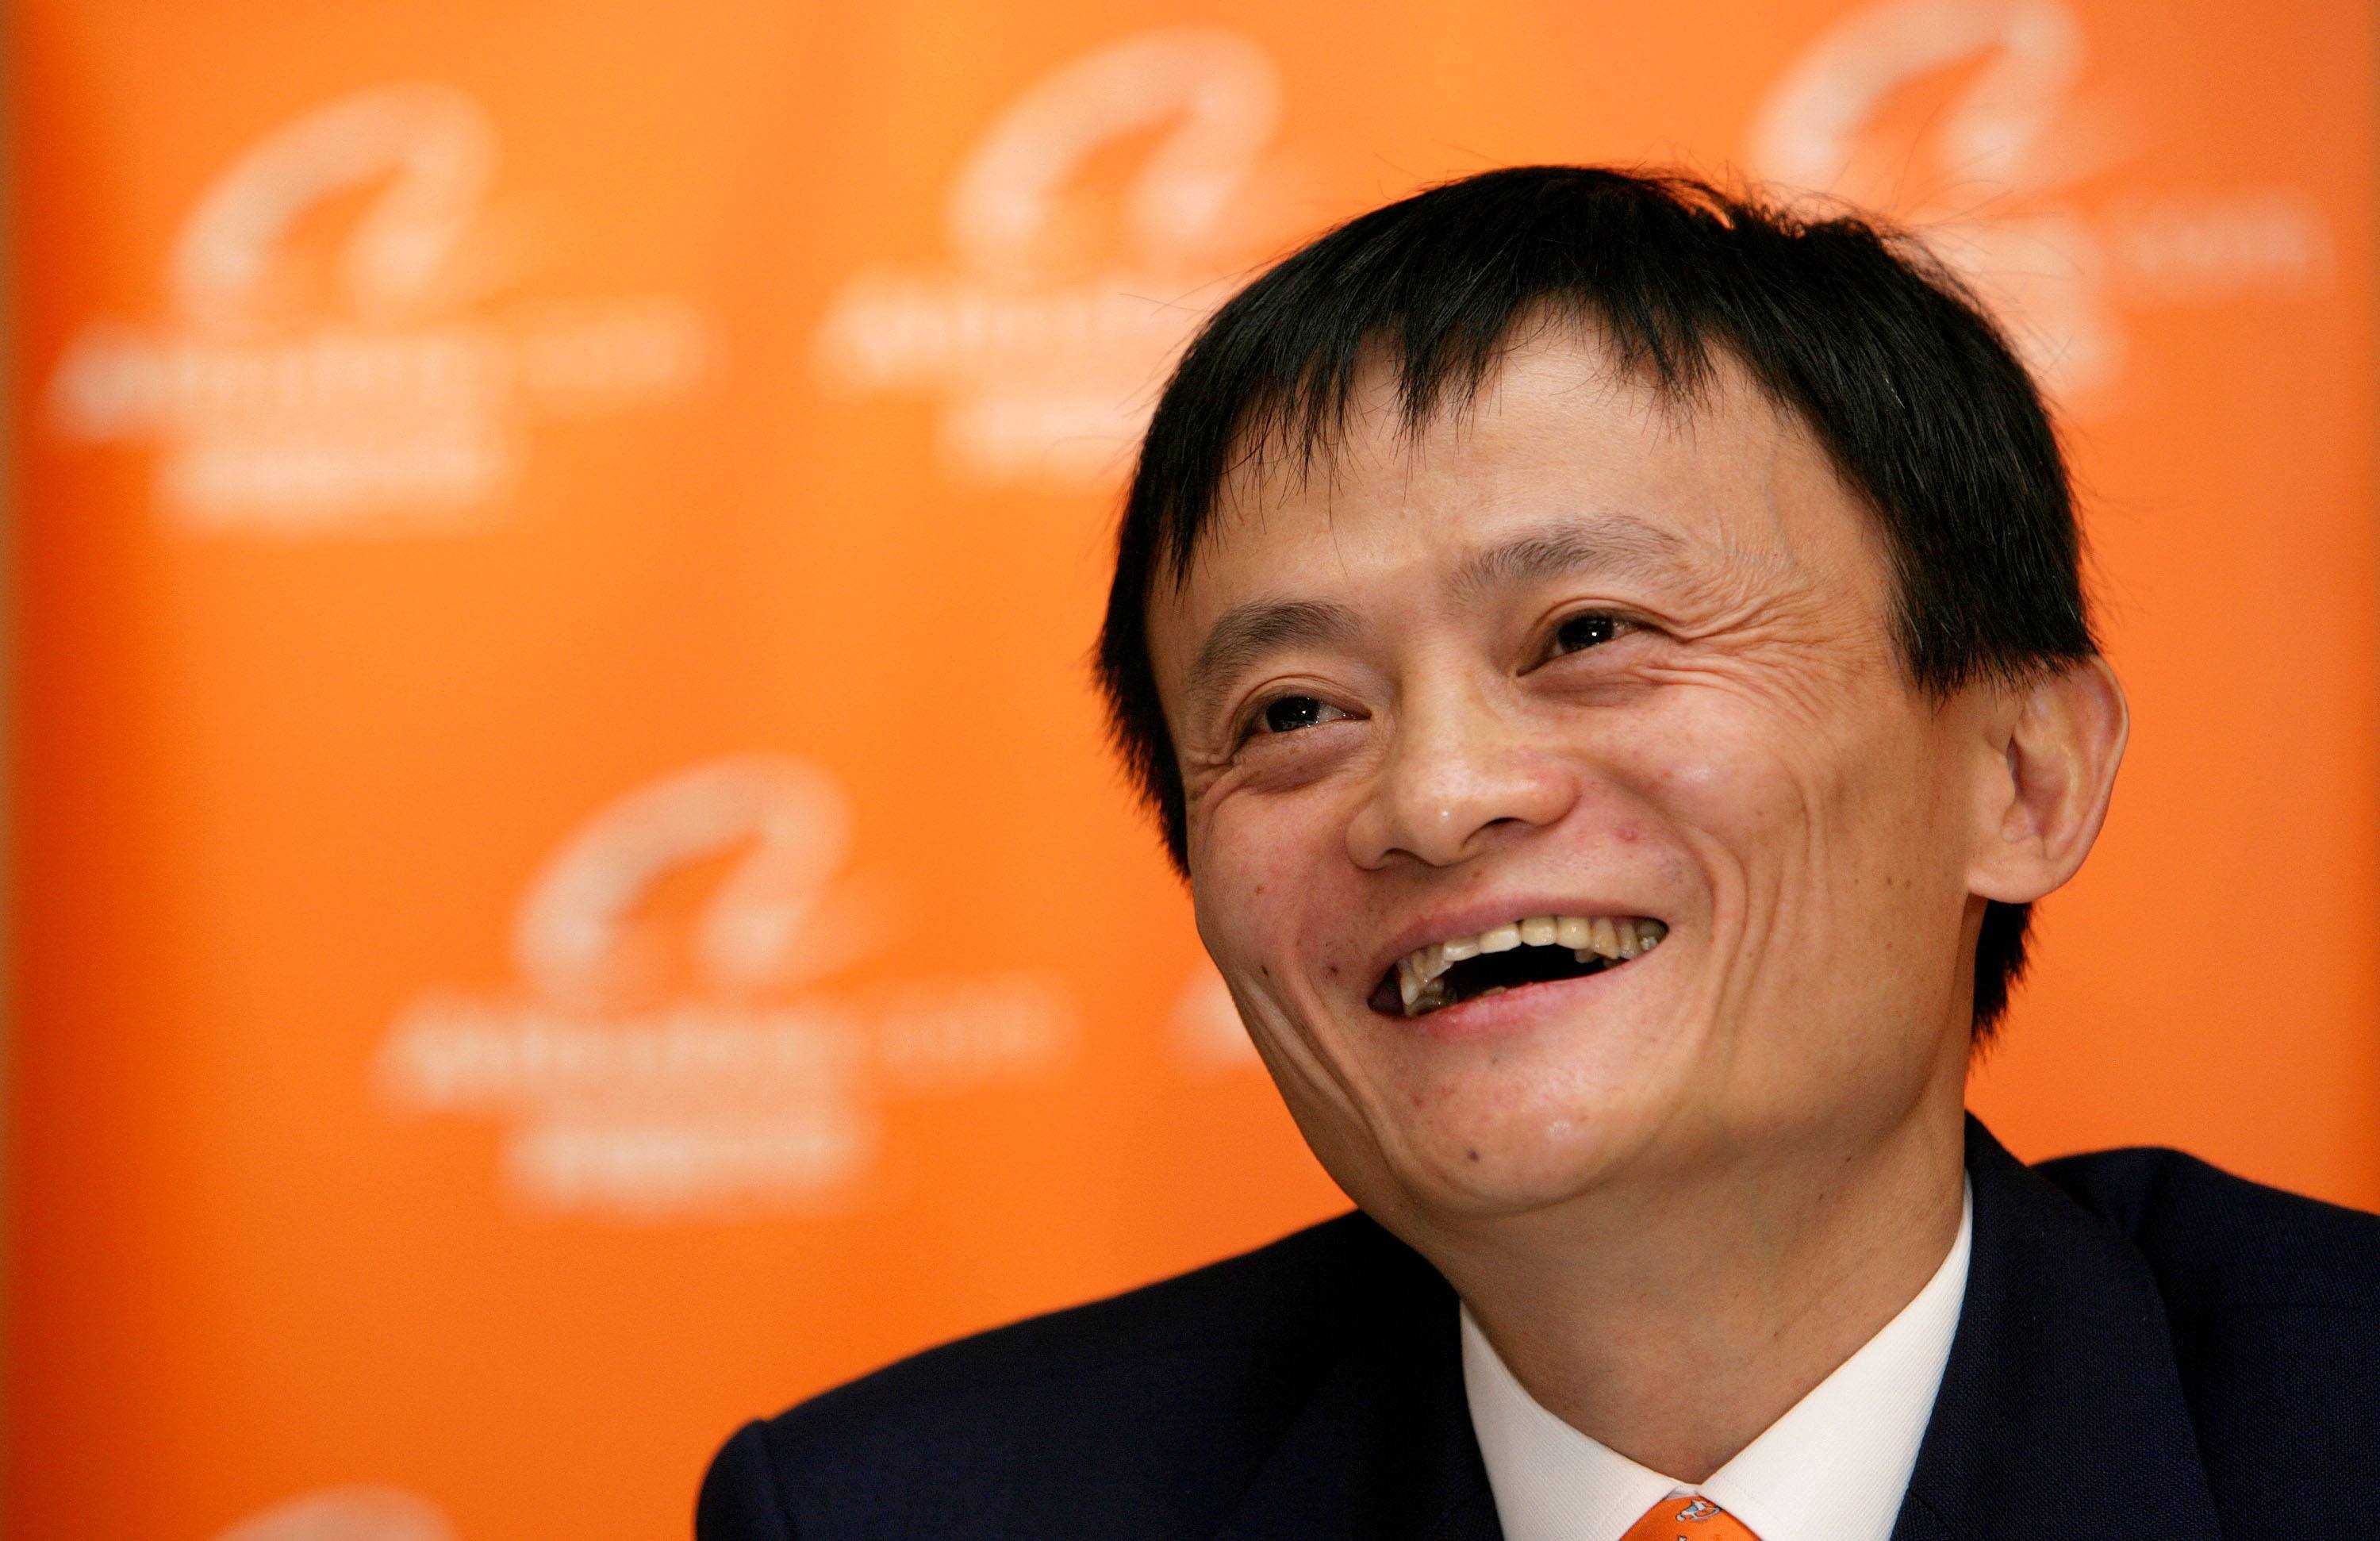 Conosciamo meglio Jack Ma, fondatore di Alibaba attraverso 15 frasi celebri